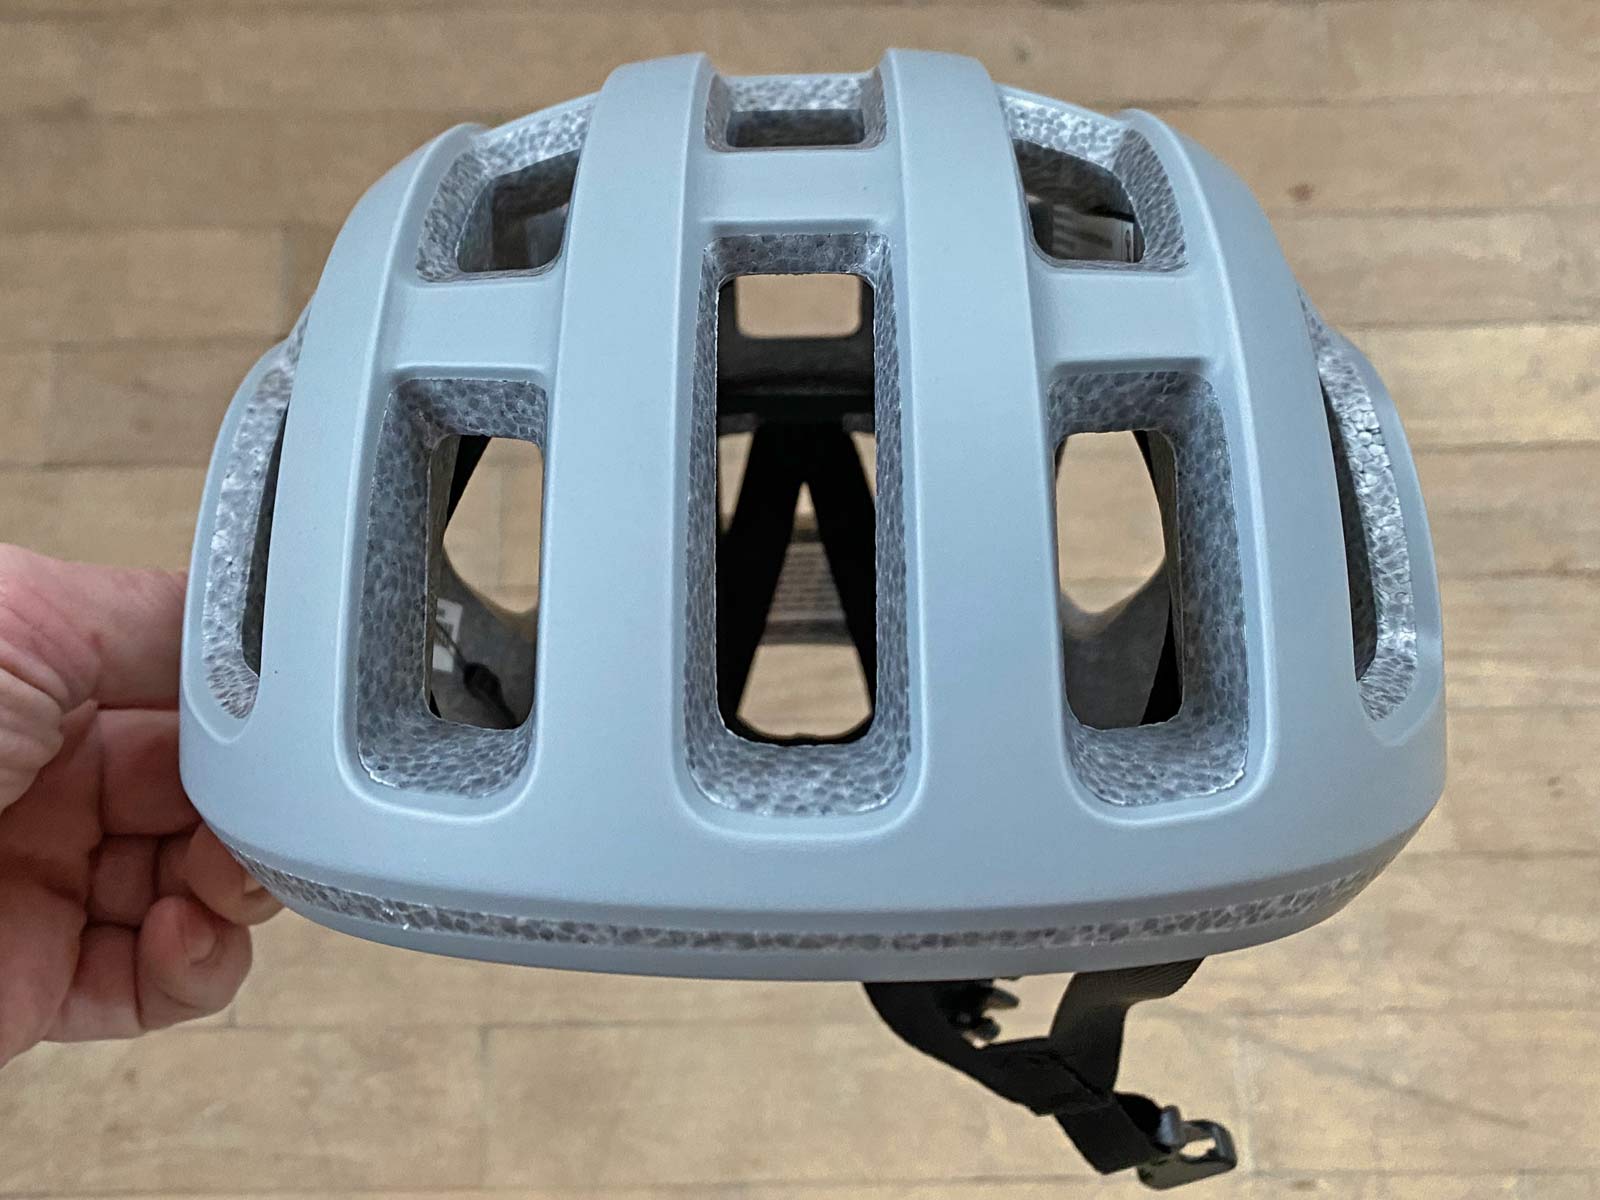 POC Ventral Lite ultralight helmet, fully vented lightweight 182g road bike helmet, front